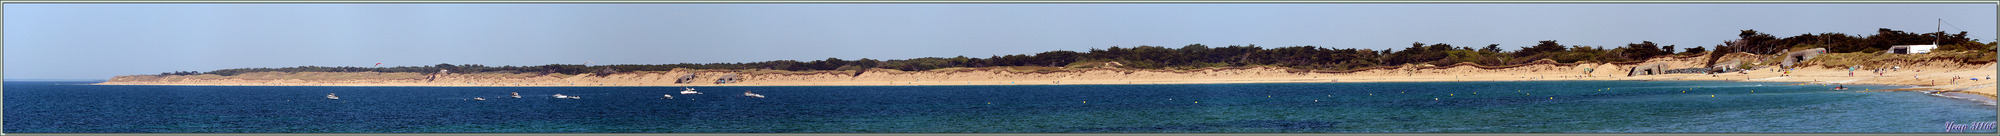 La plus belle plage de l'île de Ré : la plage de la Conche des Baleines - Saint-Clément-des-Baleines - Île de Ré - 17